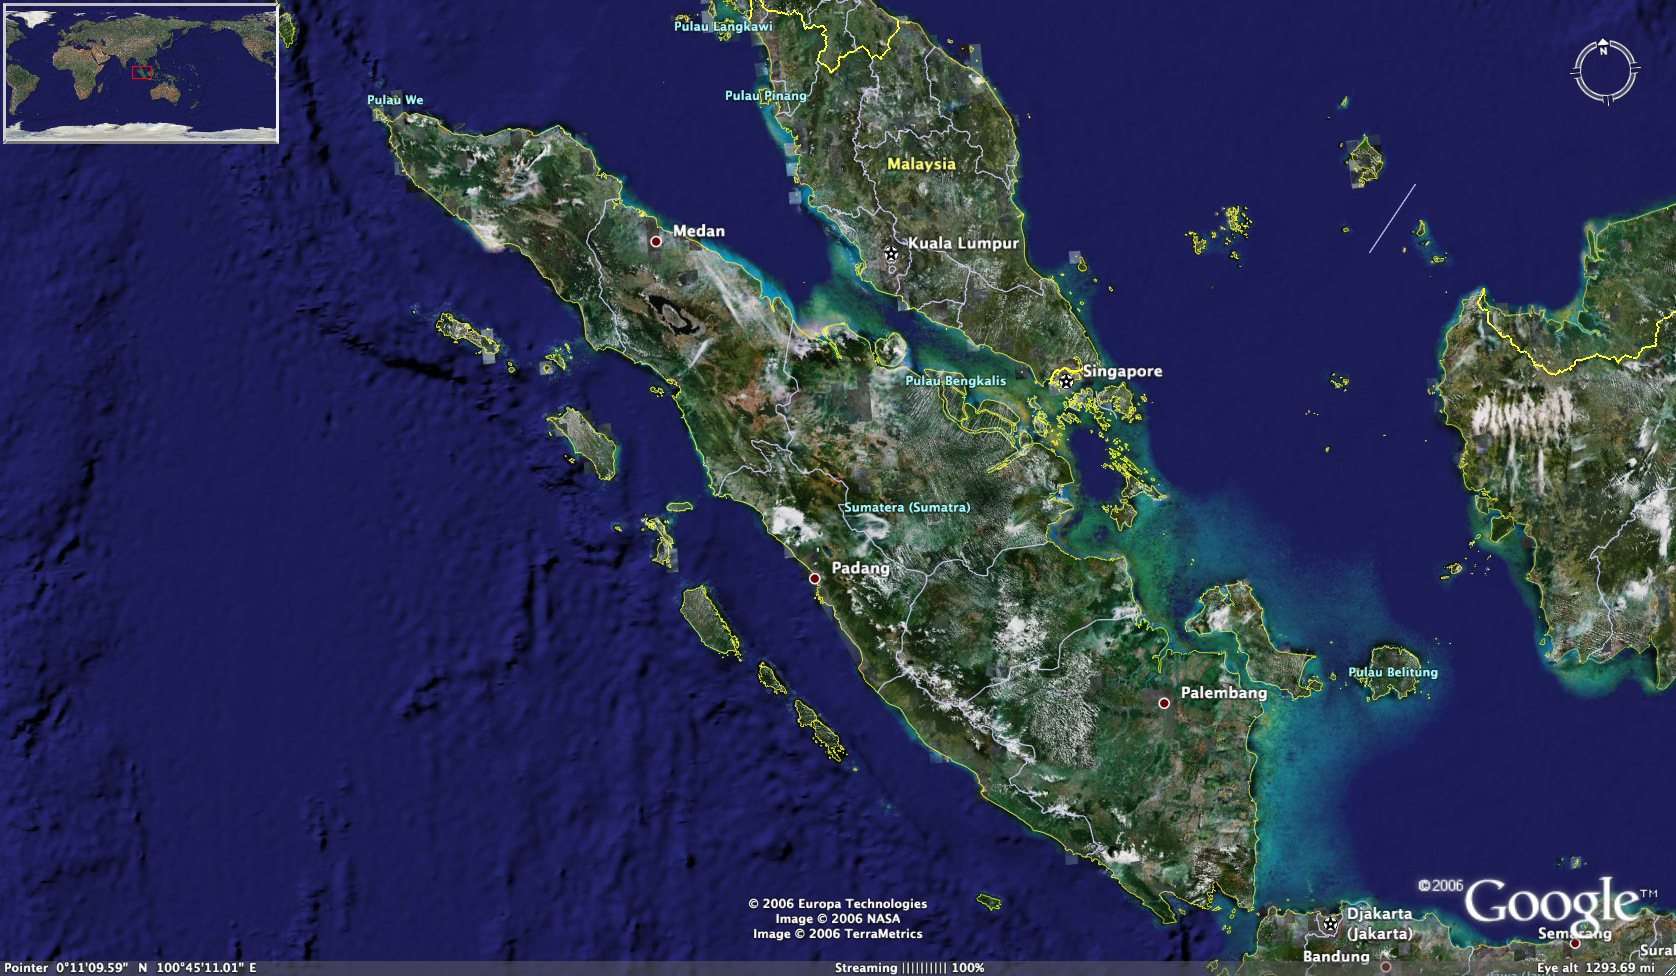 Download this Sumatra Photo Satellite picture